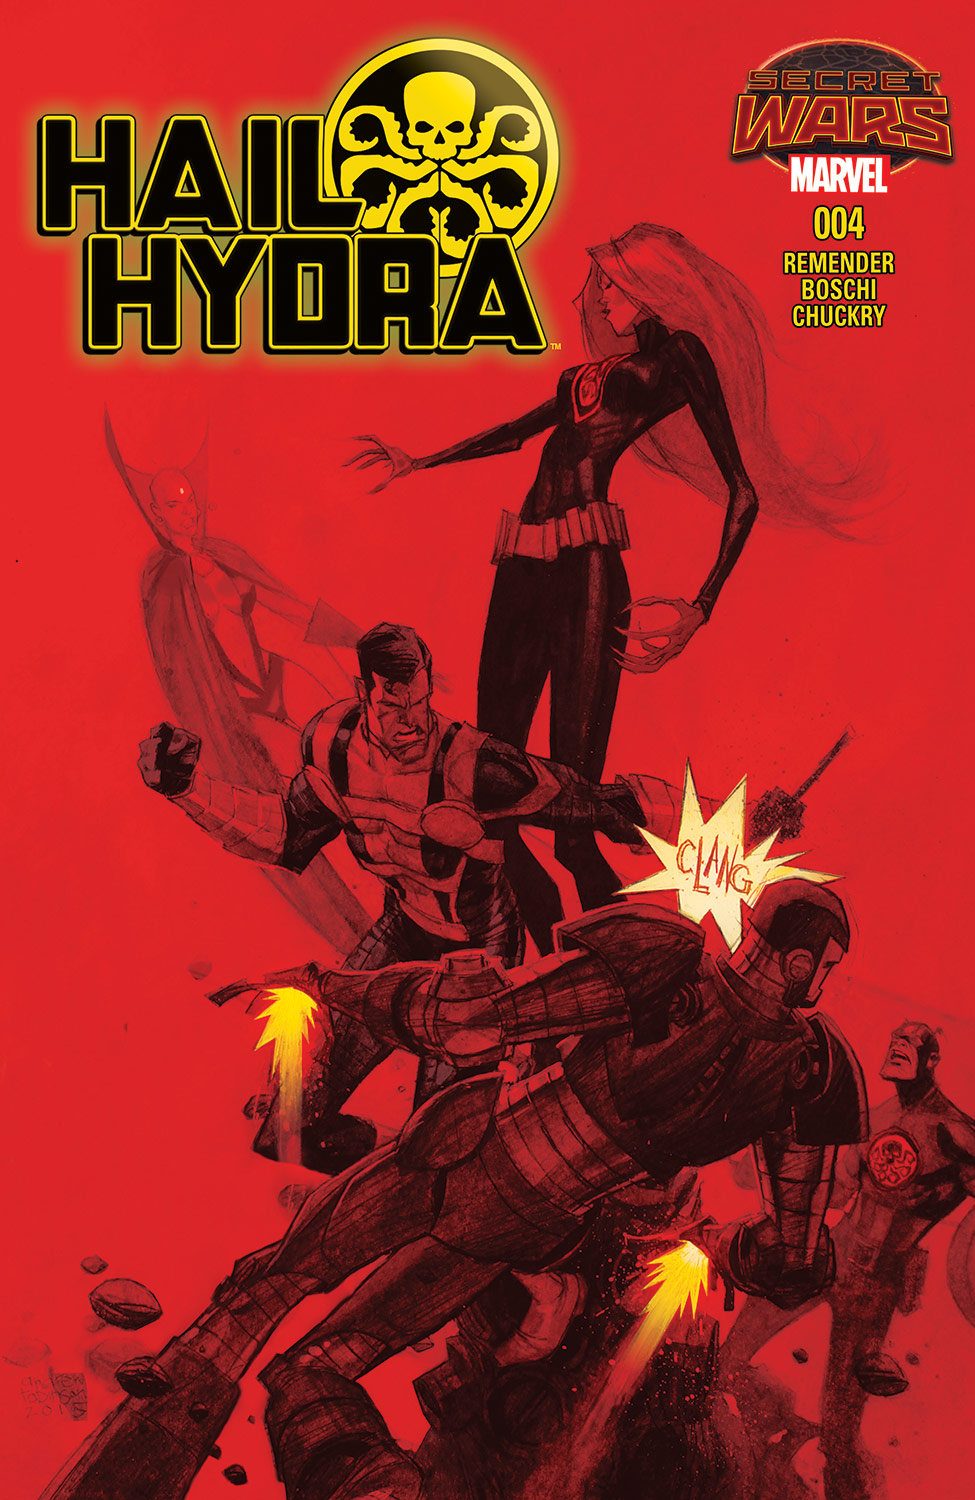 Hail Hydra (2015) #4